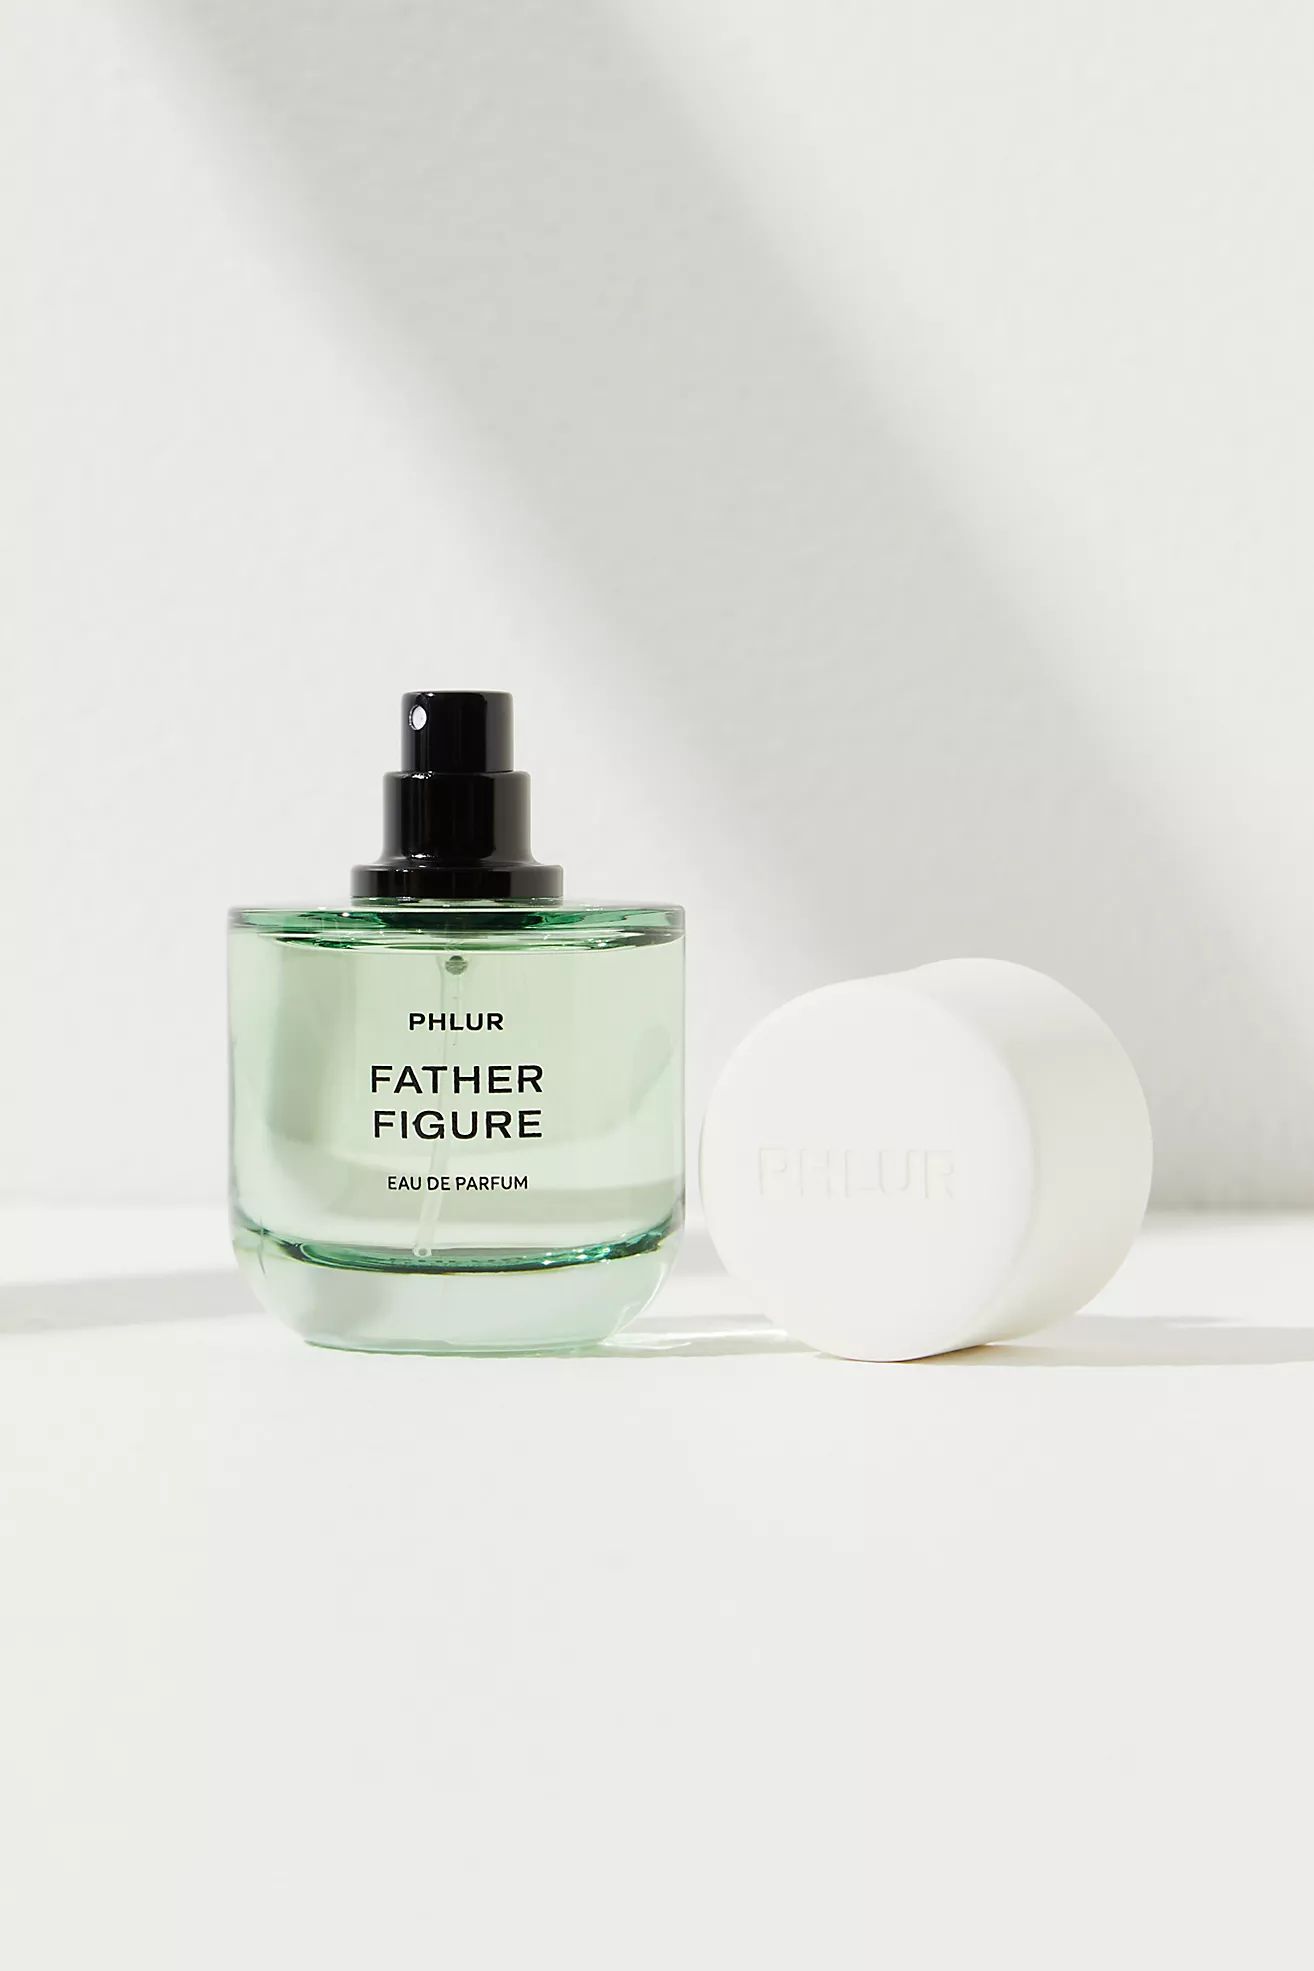 Phlur Father Figure Eau De Parfum | Free People (UK)